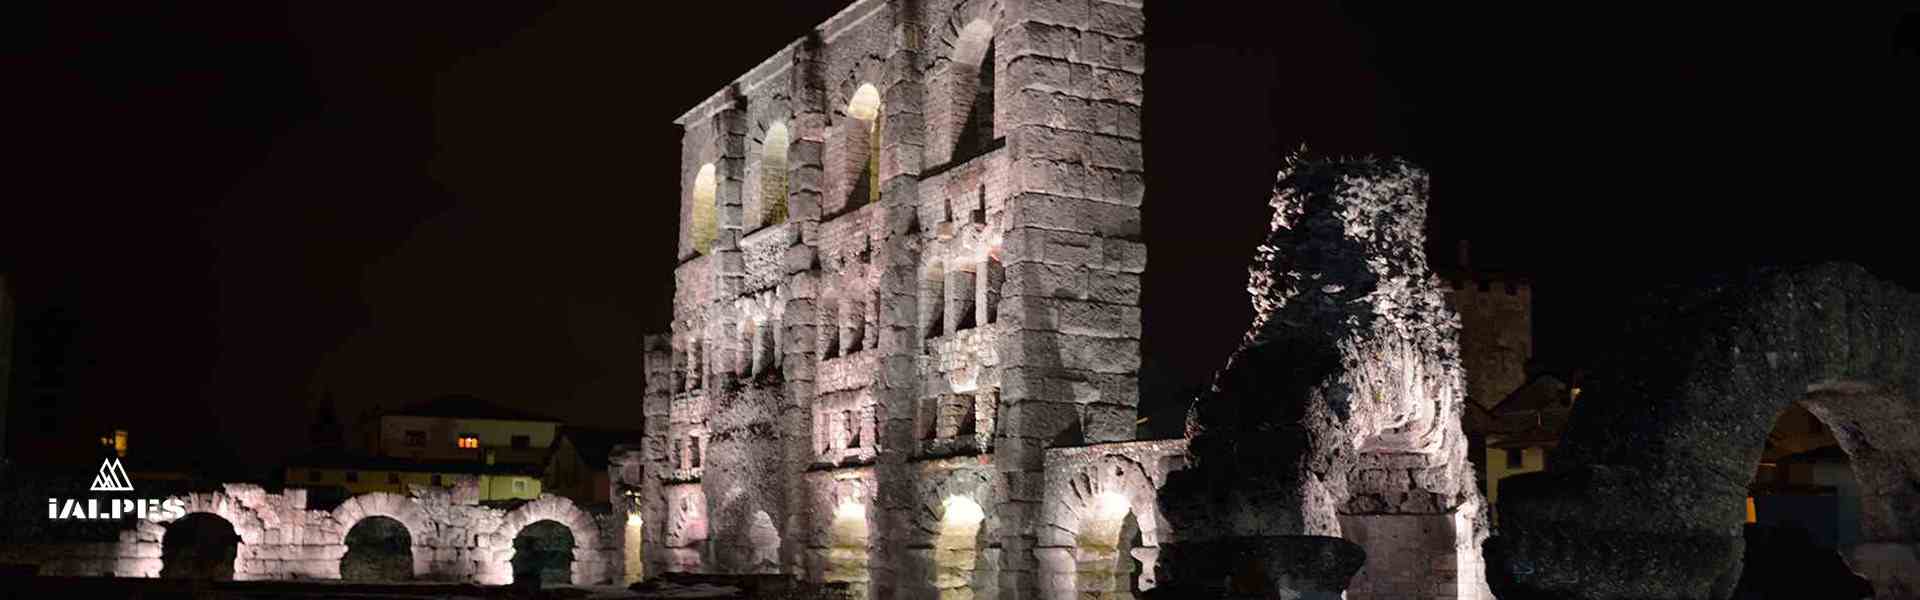 Théâtre antique romain d'Aoste, Italie 